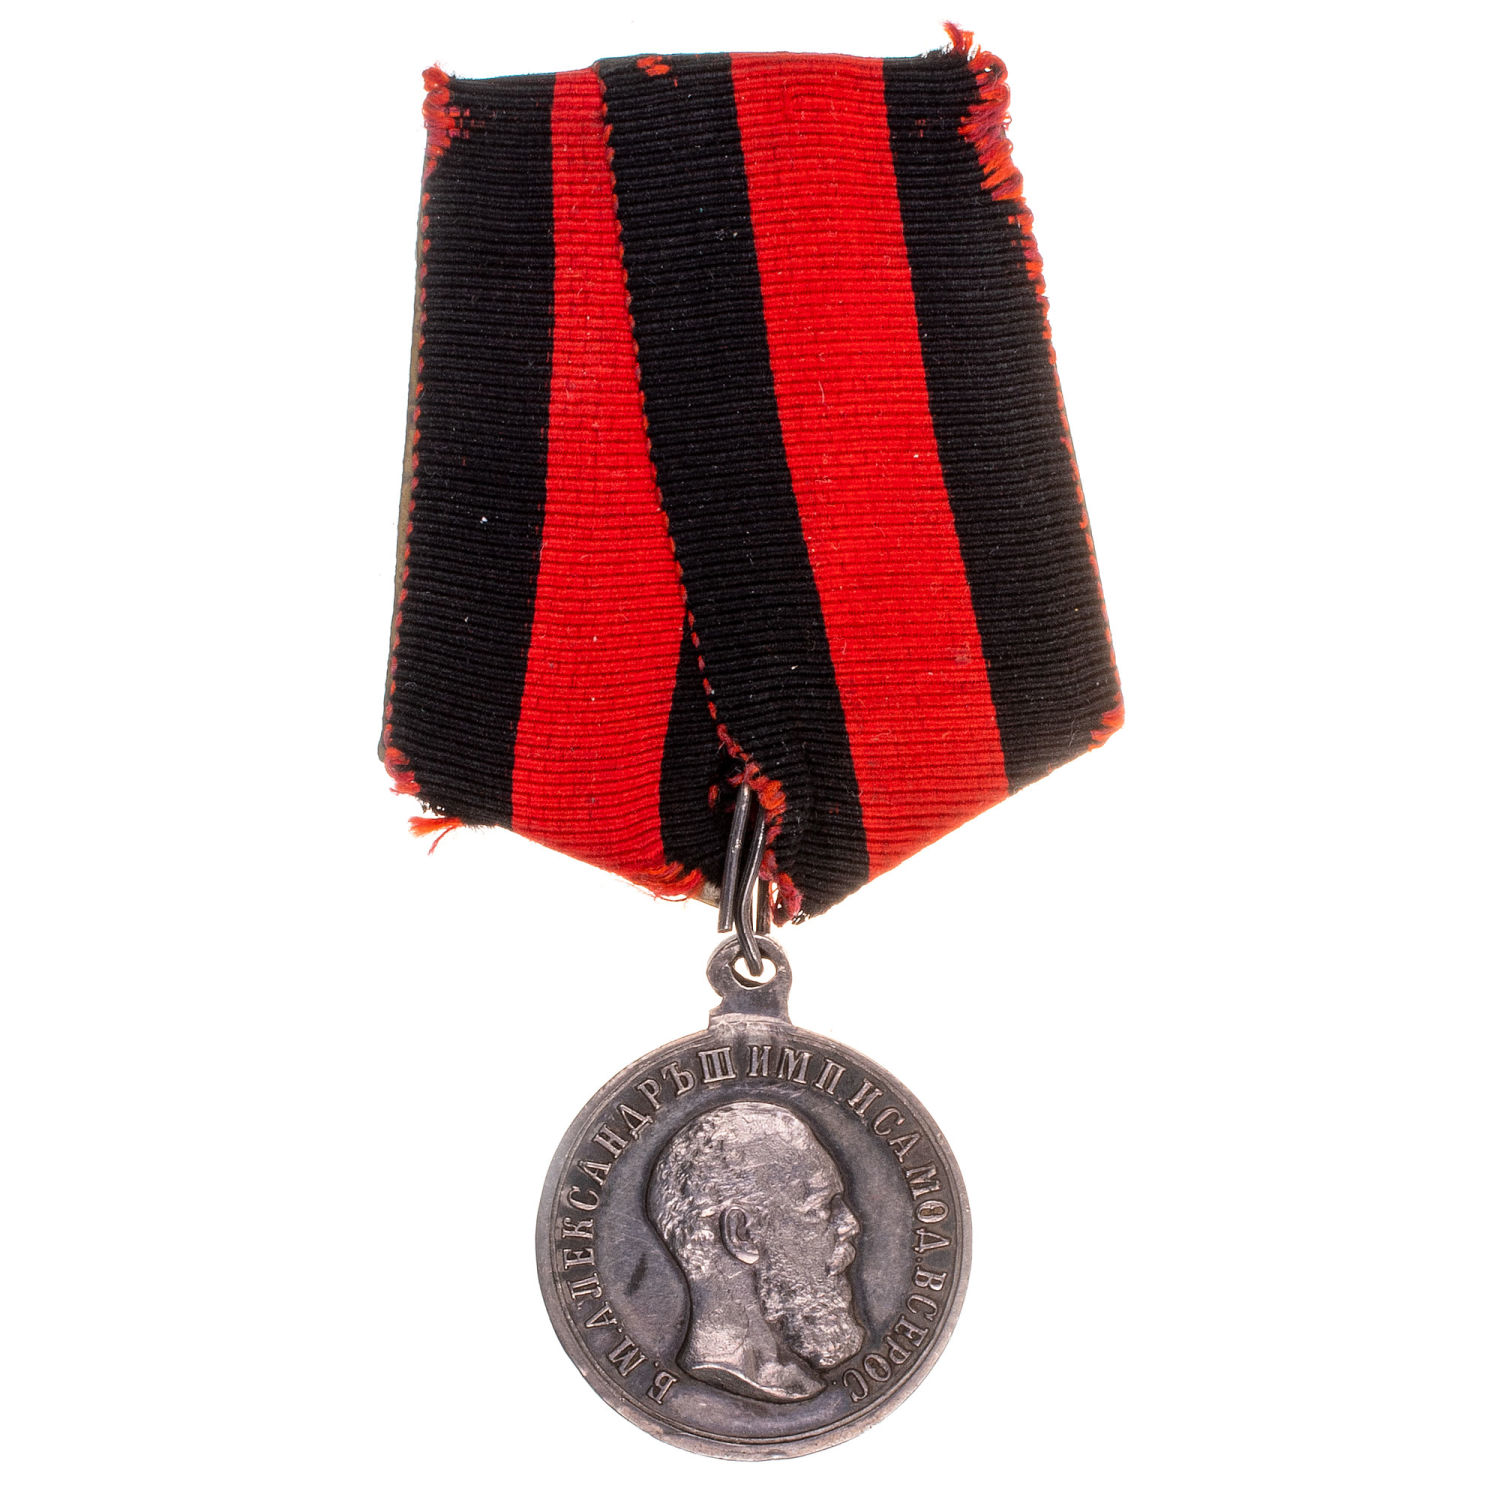 Медаль "За спасение погибавших" с портретом Императора Александра III, на колодке. Частник.